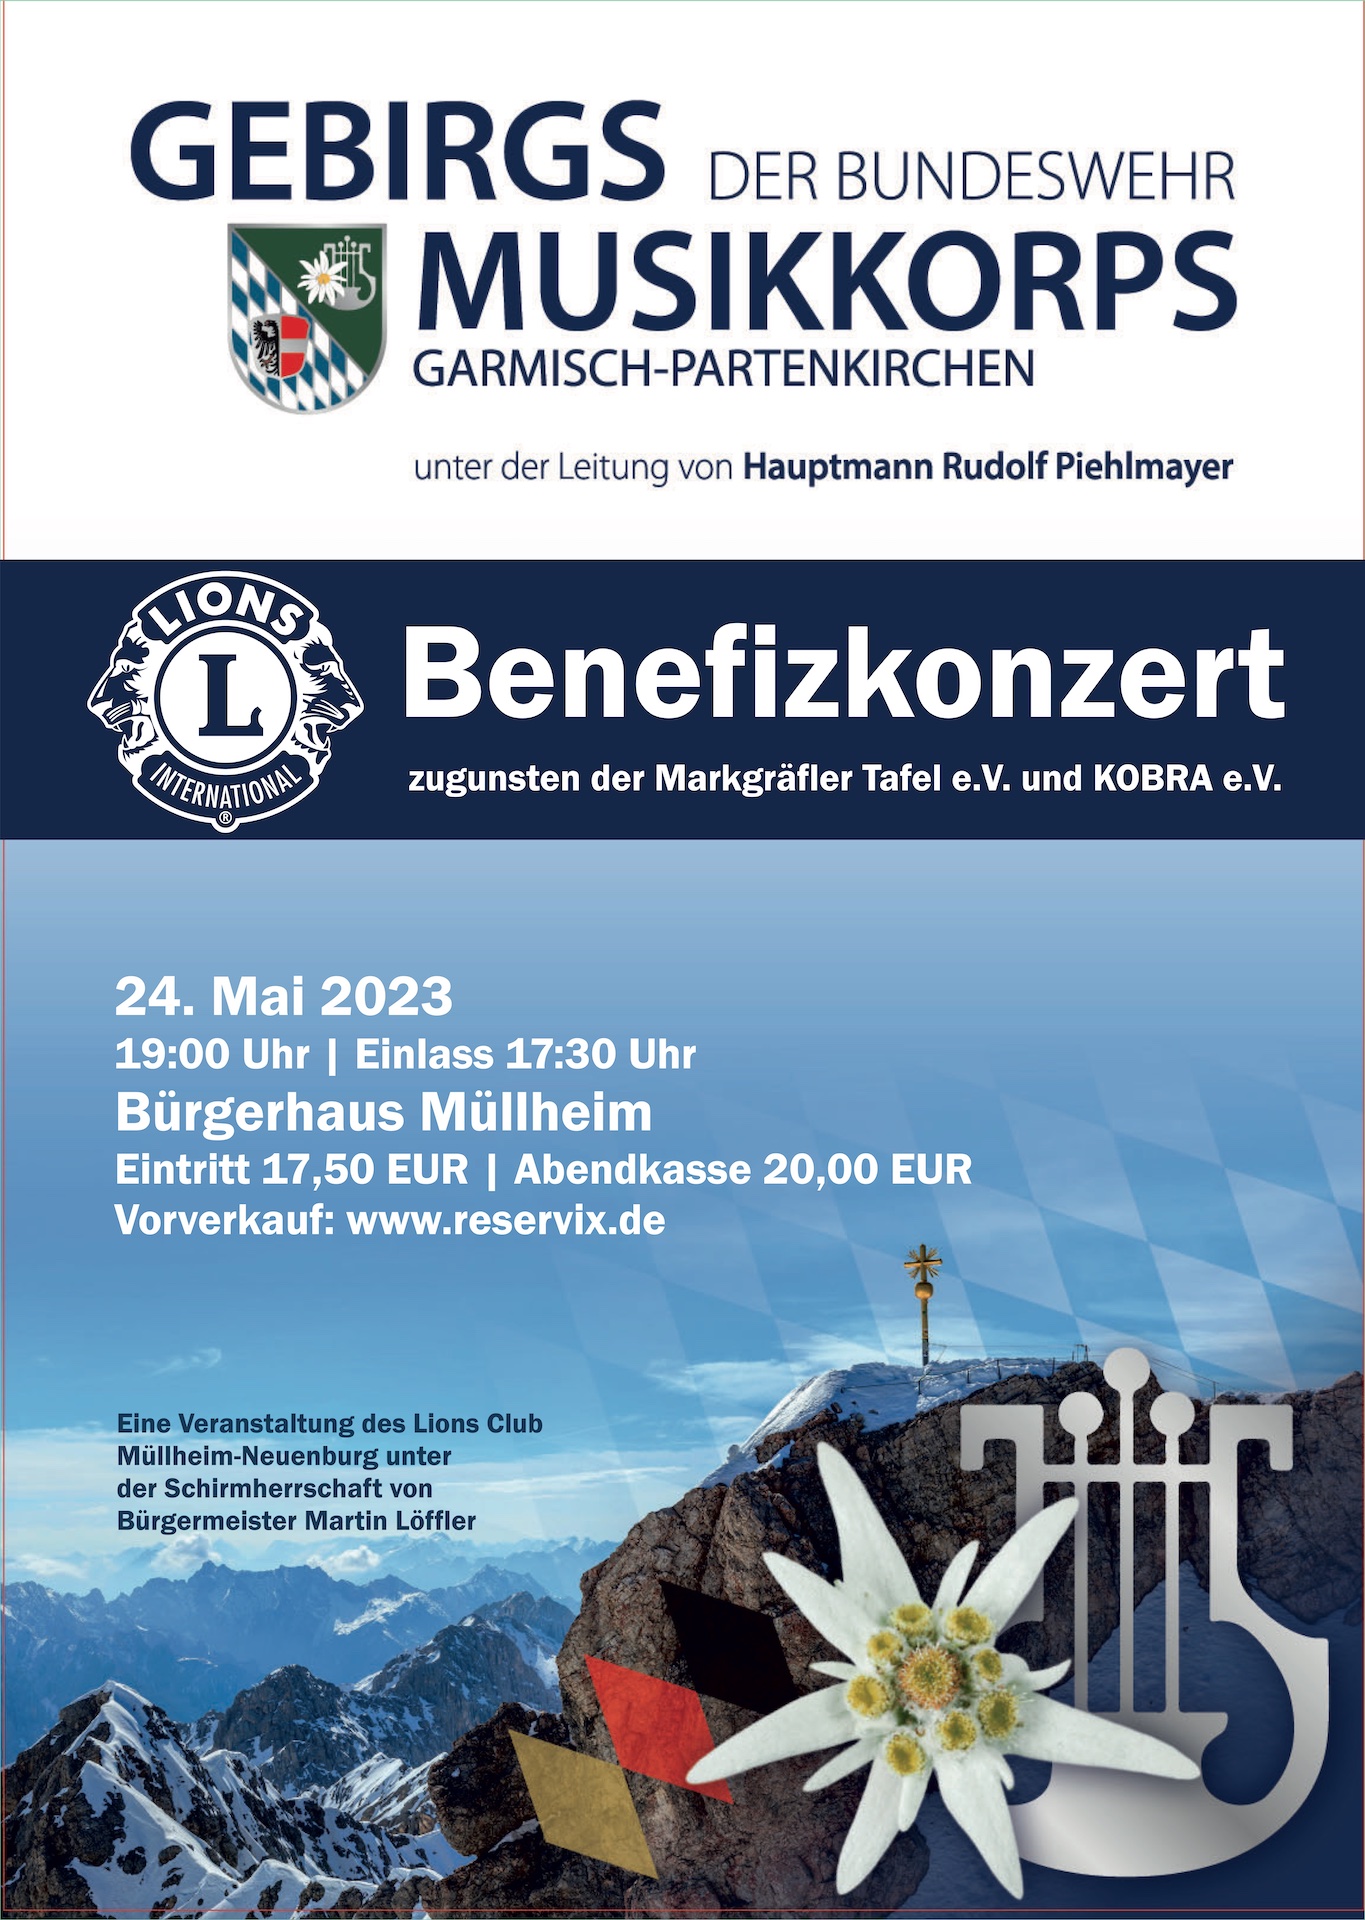 Plakat des Benefizkonzert des GEBIRGSMUSIKKORPS der BUNDESWEHR